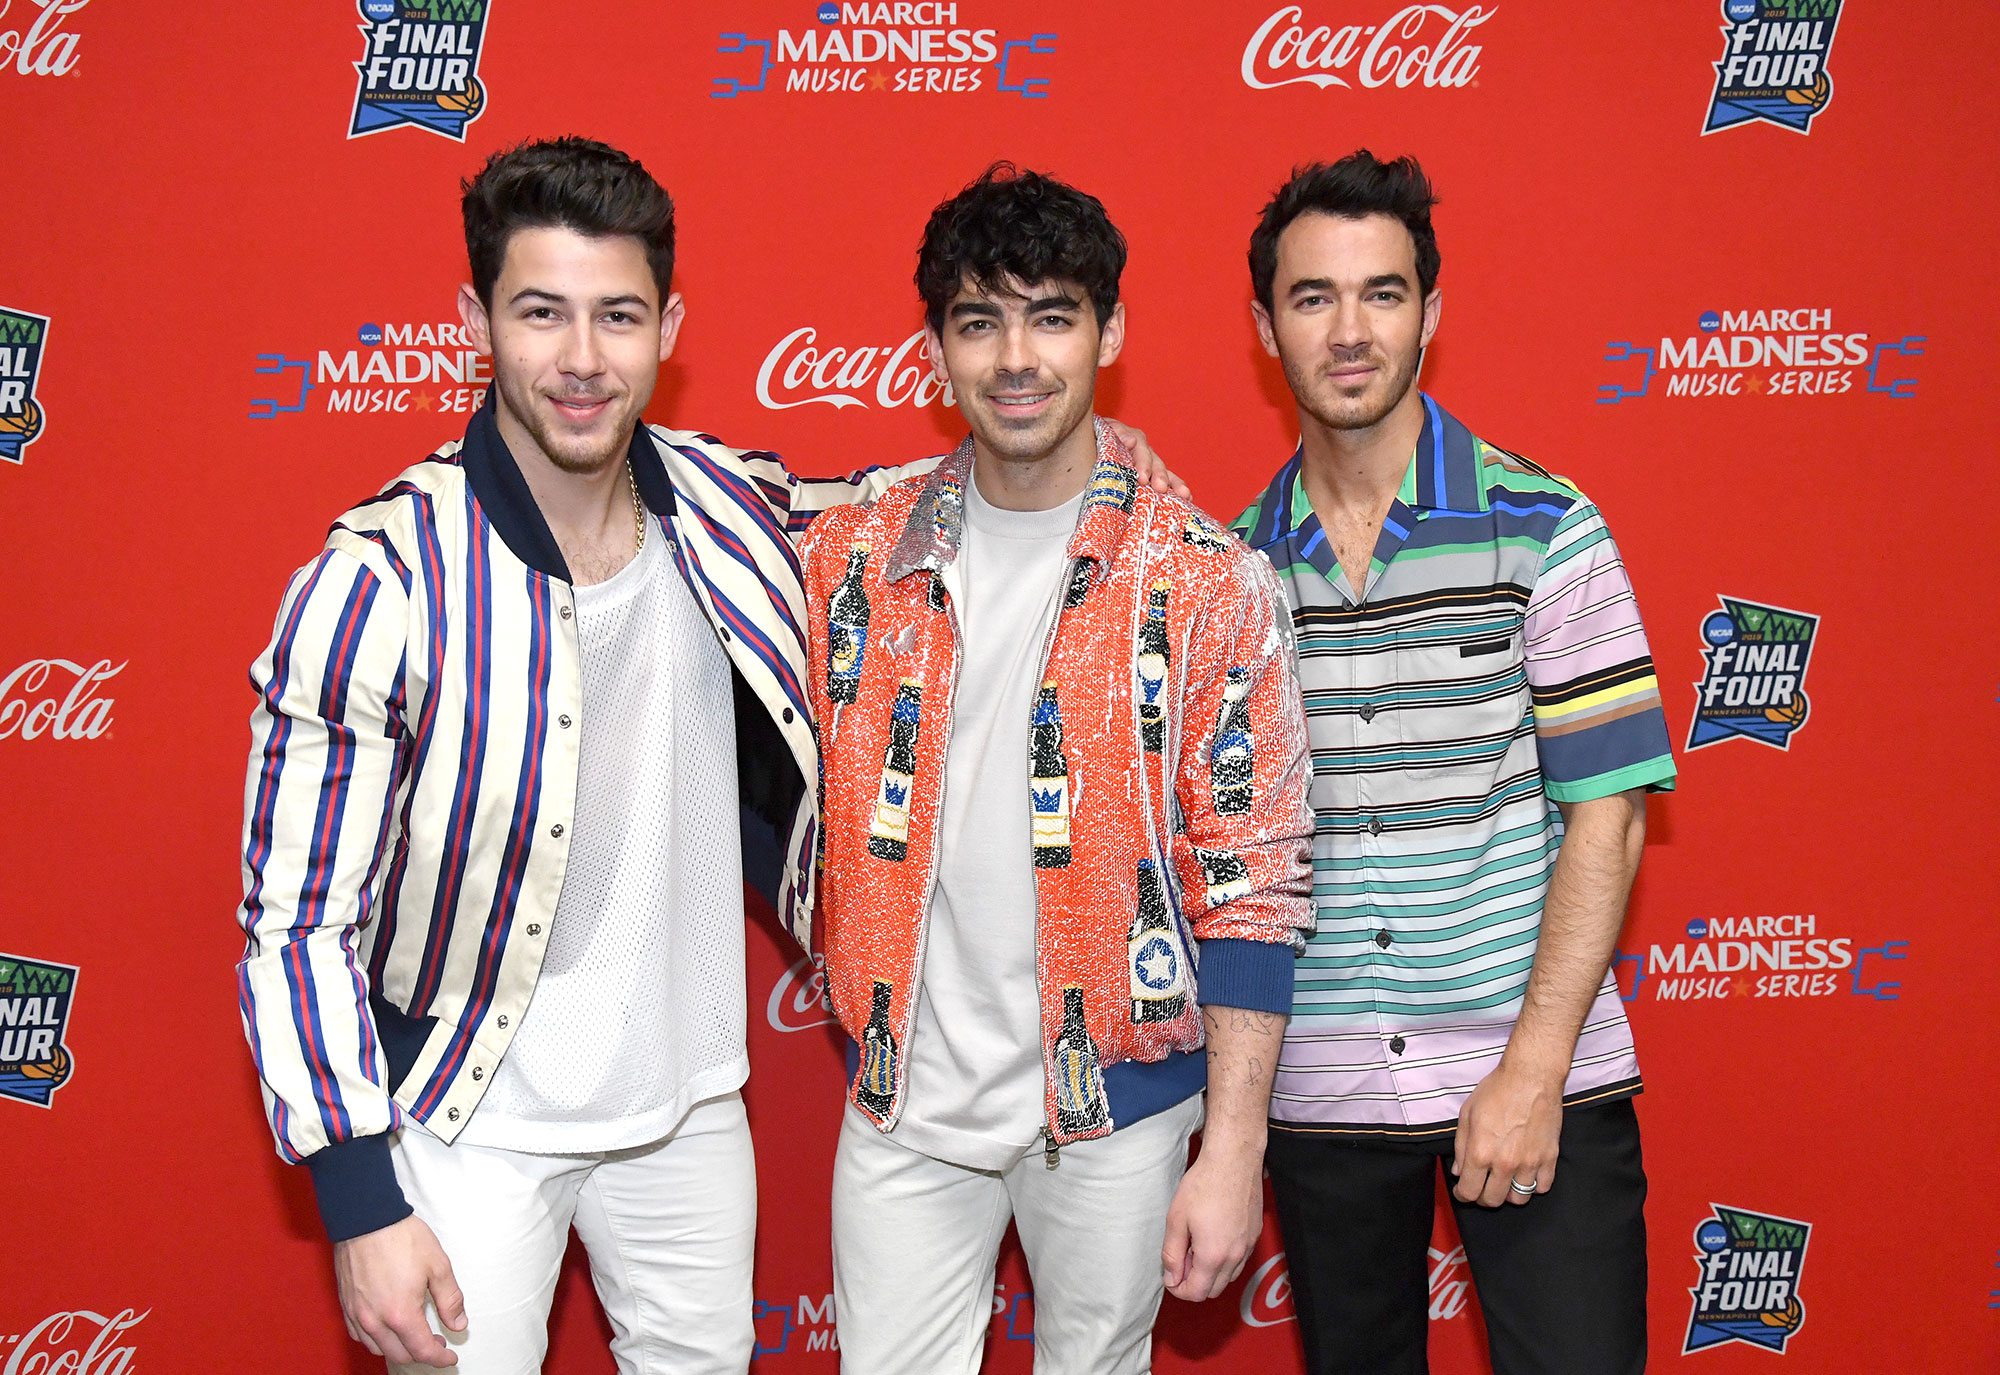 Jonas Brothers Release Happiness Begins Album